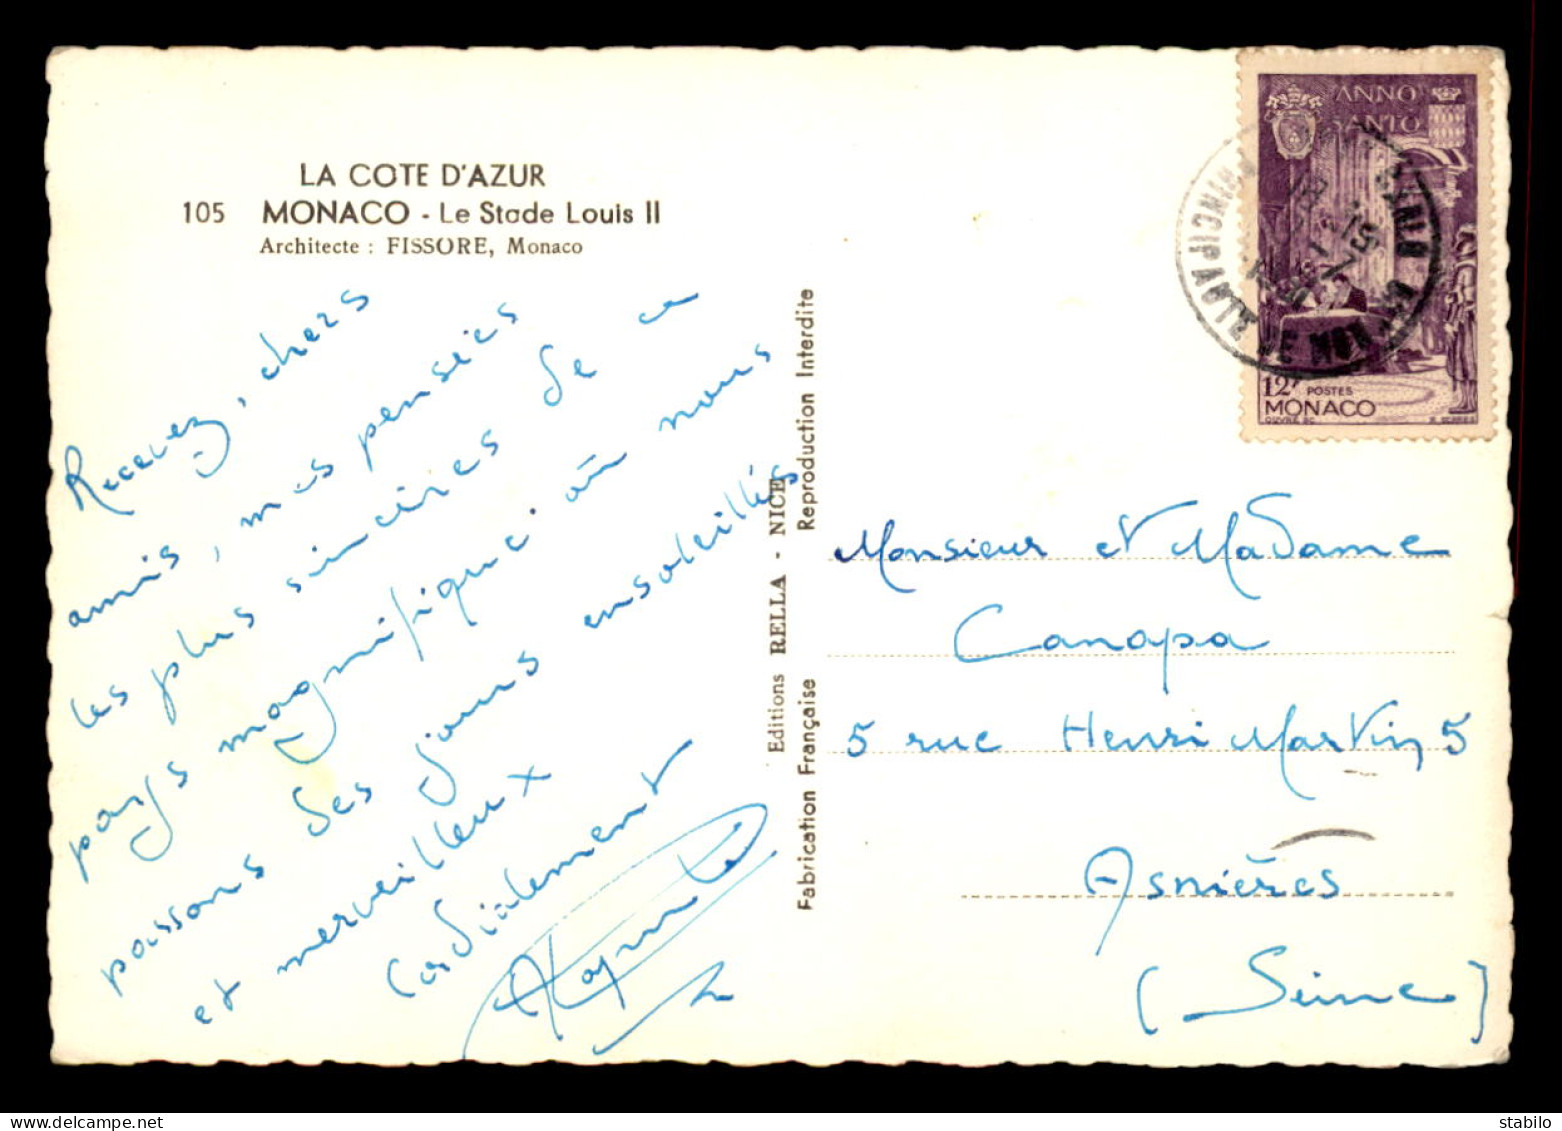 MONACO - TIMBRE 12 FRS N°358 SEUL SUR CARTE, VOYAGE LE 8.7.1951 SUR CARTE DU STADE LOUIS II (ARCHITECTE FISSORE) - Marcofilia